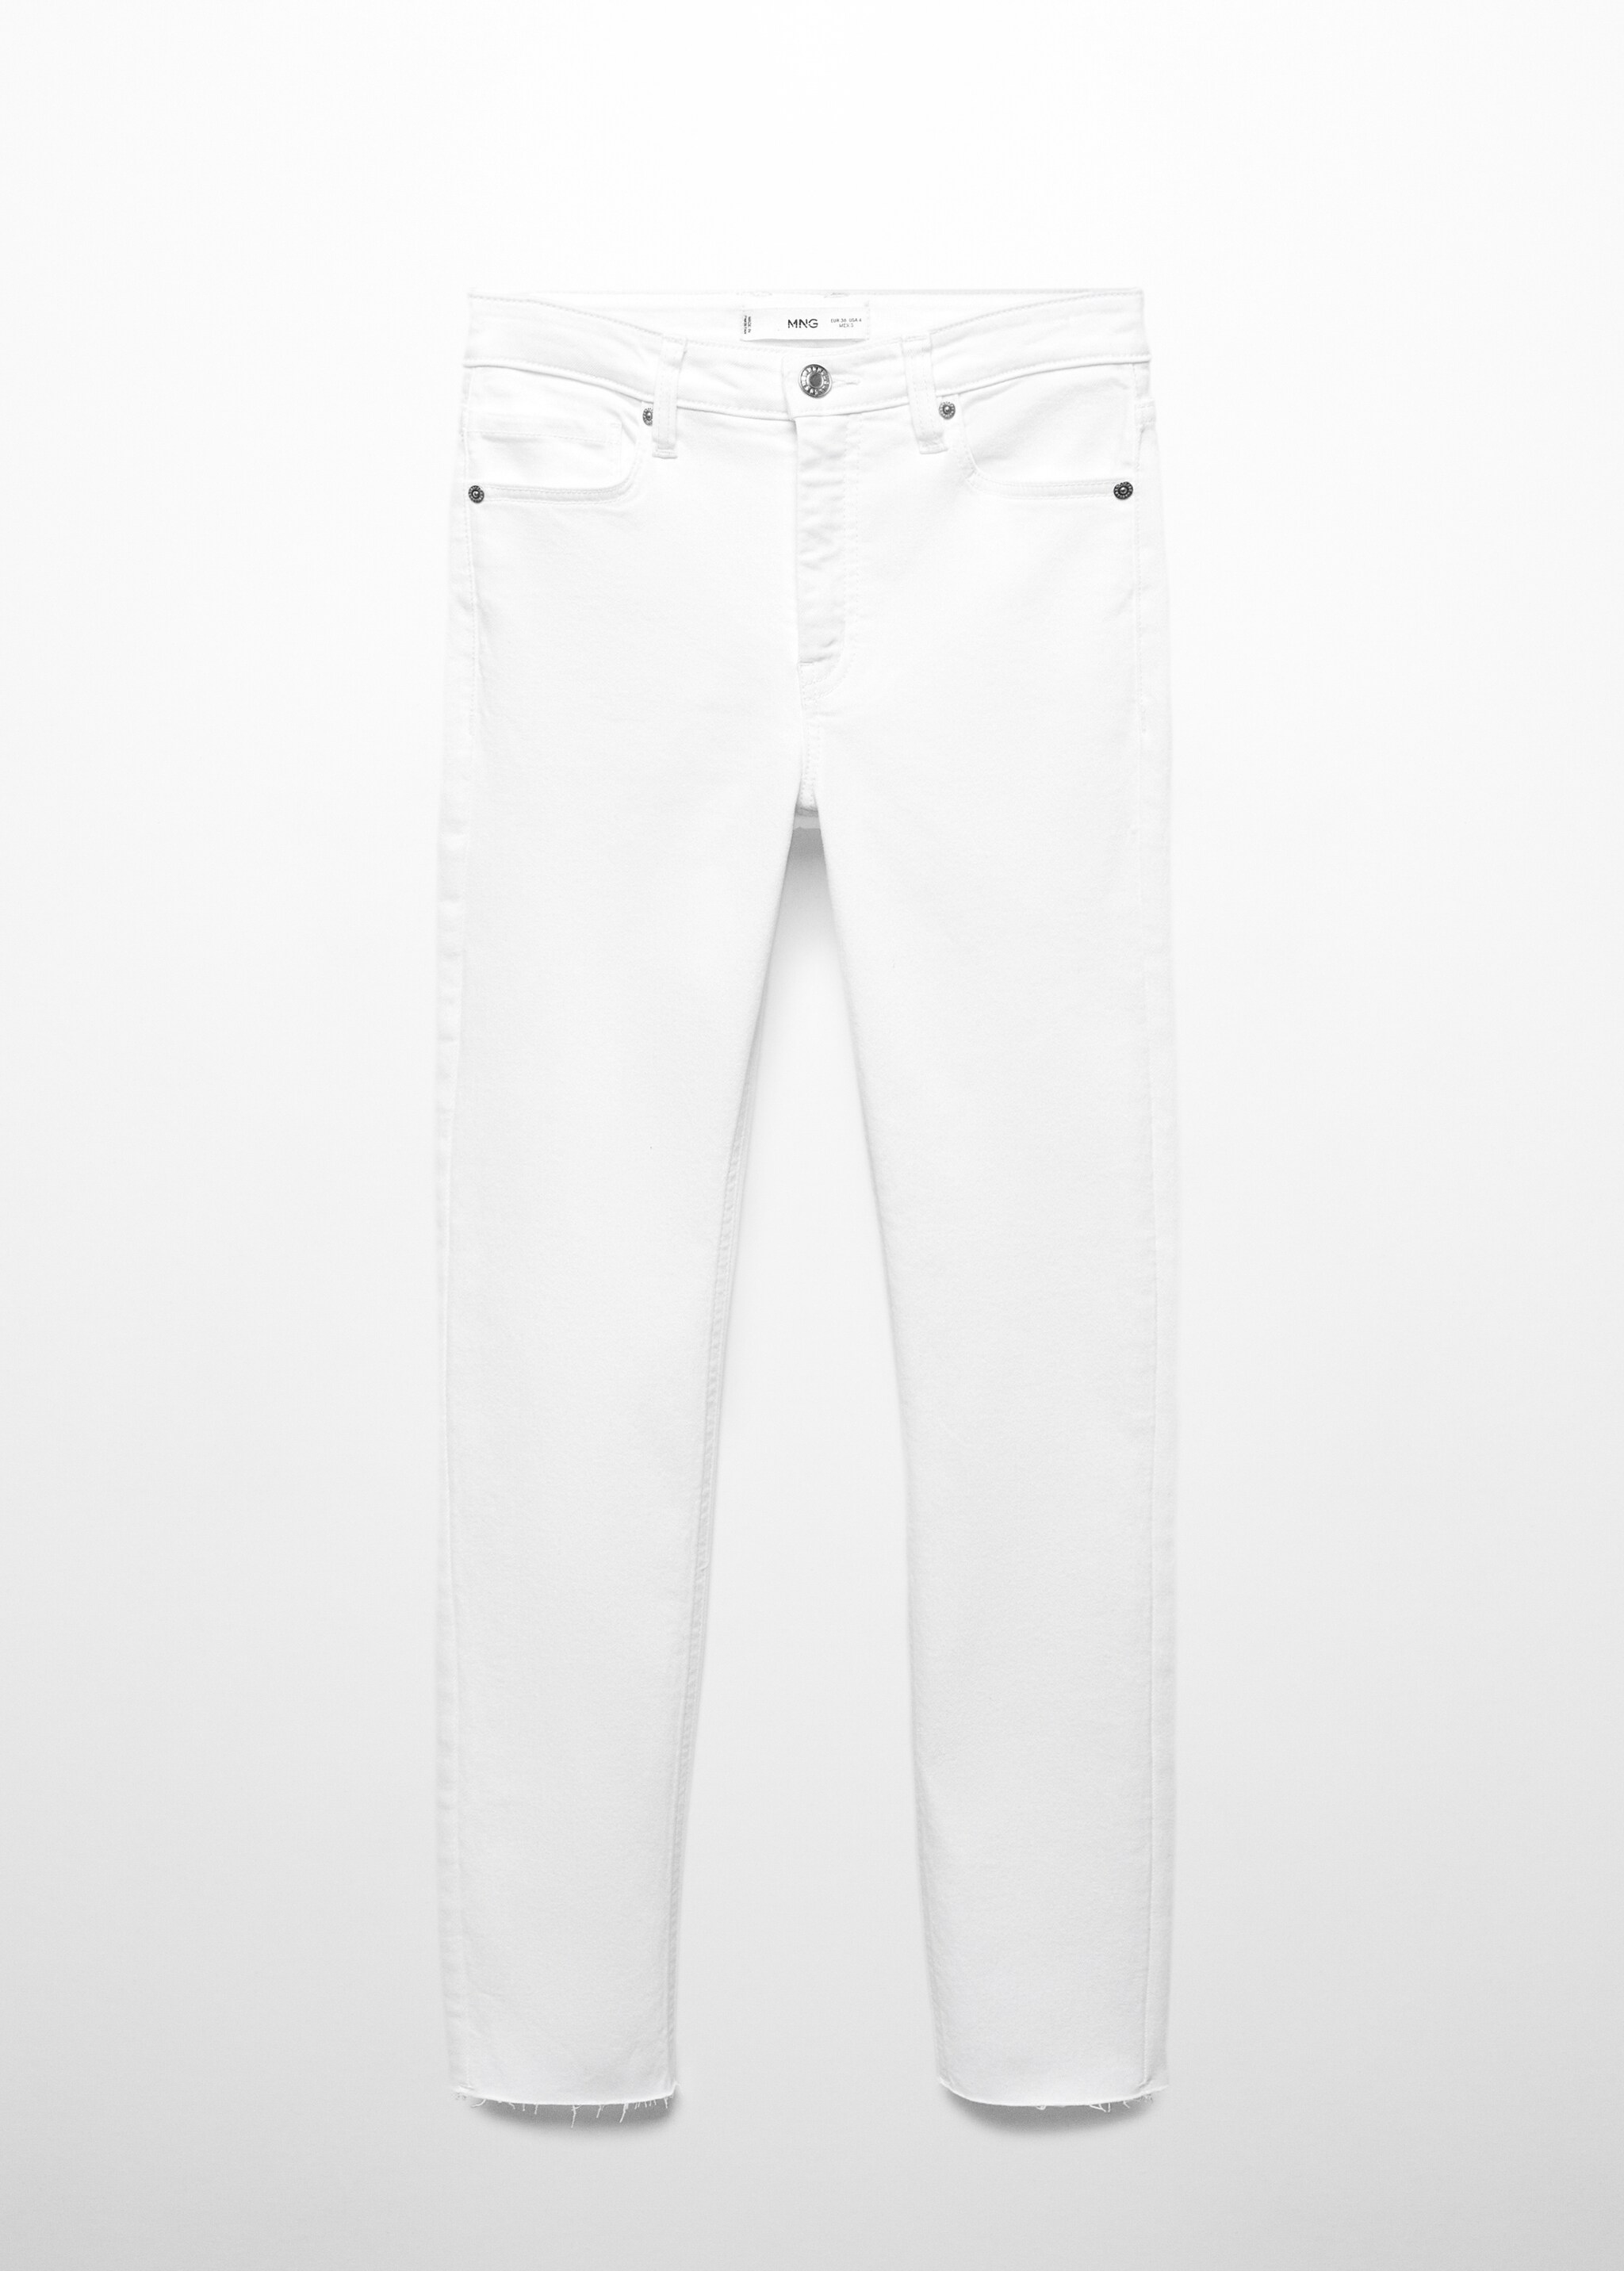 Укороченные джинсы-скинни - Изделие без модели